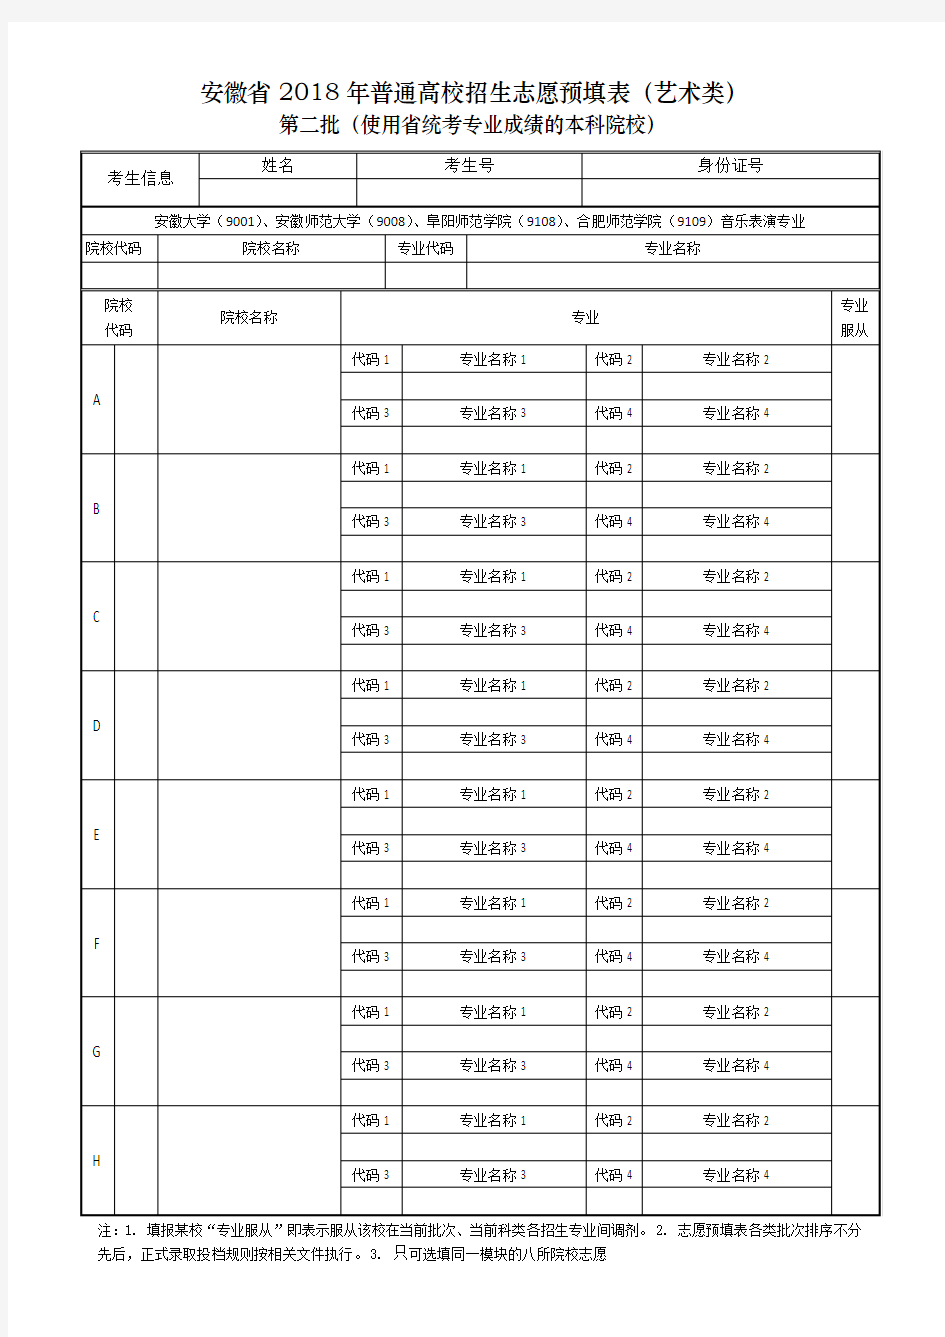 2018年安徽省高考志愿预填表